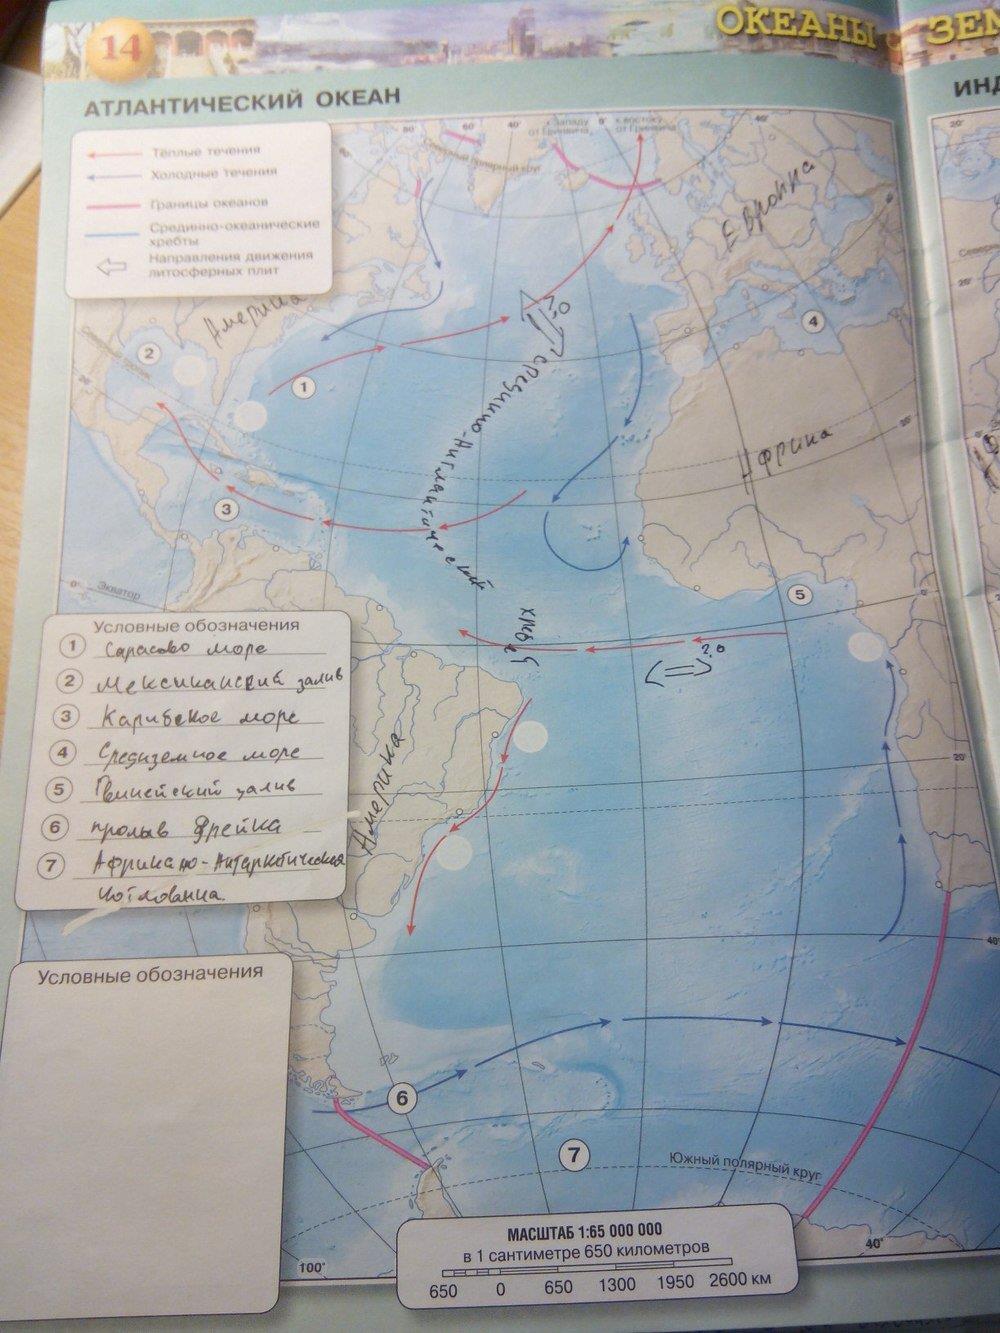 Контурная карта 7 класс стр 38. Атлантический океан 7 класс география контурная карта. Атлантический океан контурная карта 7 класс готовая стр 14 Котляр. Контурная карта по географии 7 класс сфера стр 17 индийский океан.